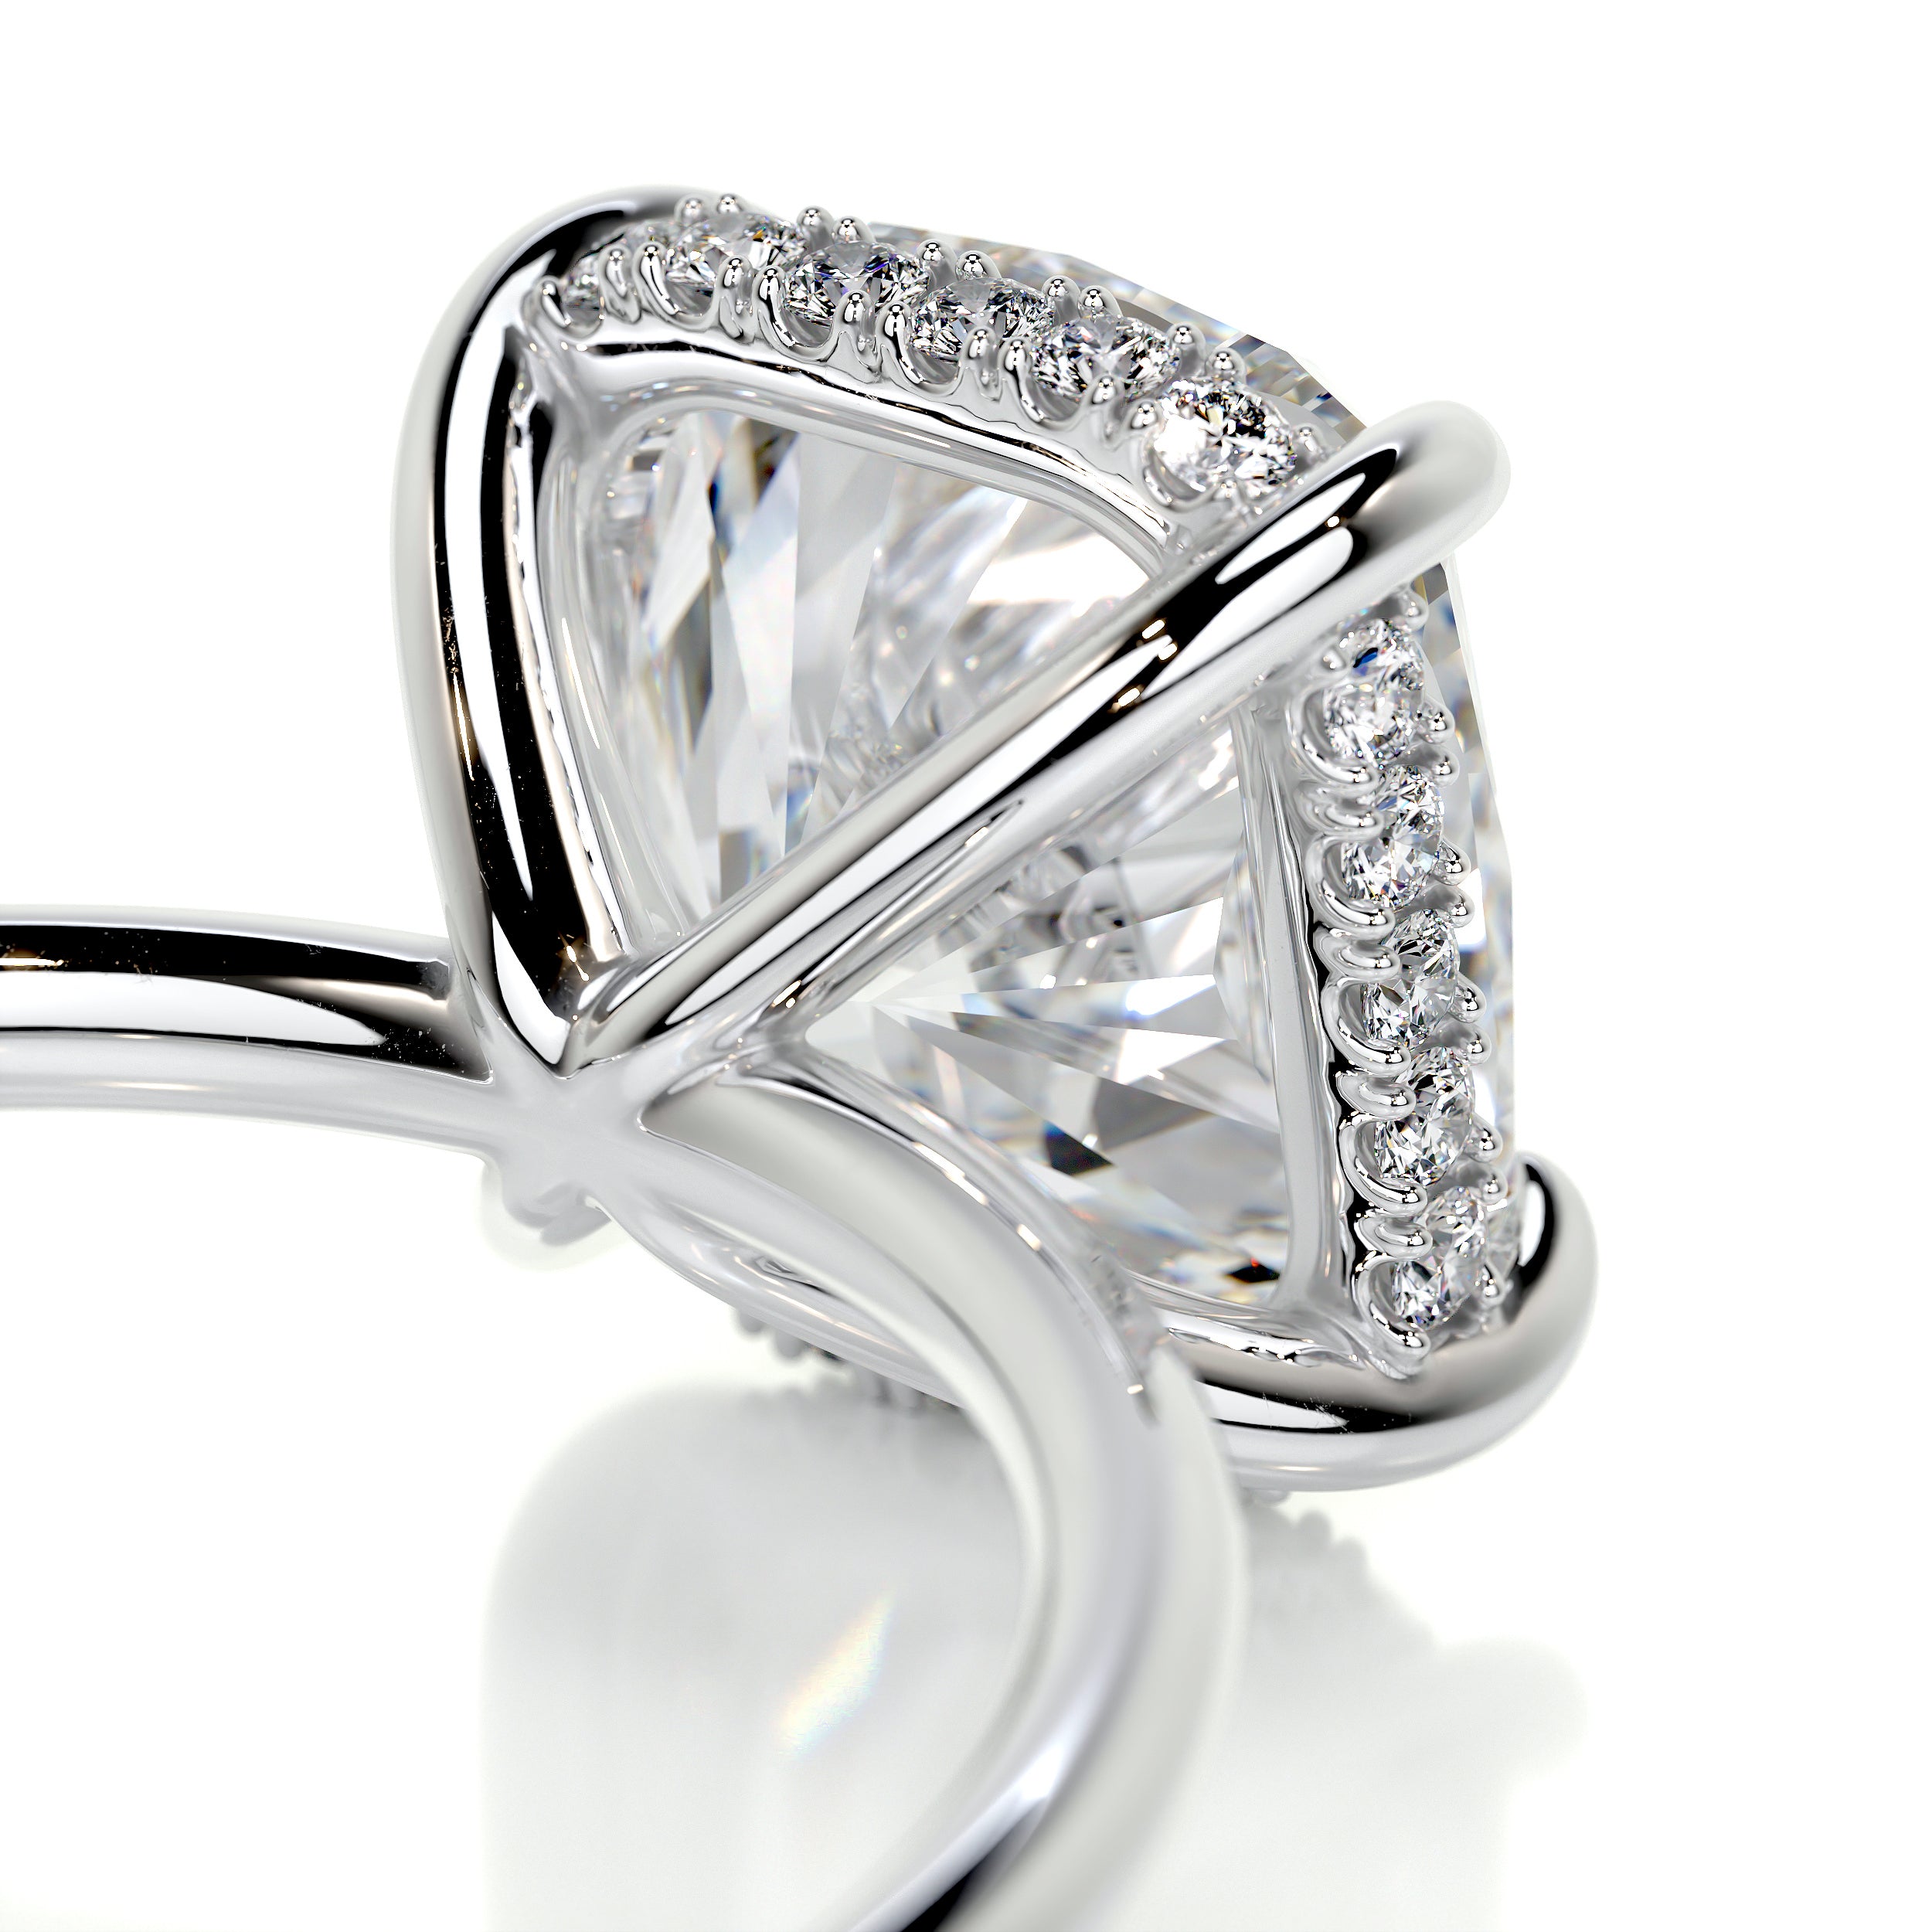 Priscilla Diamond Engagement Ring   (3.1 Carat) -Platinum